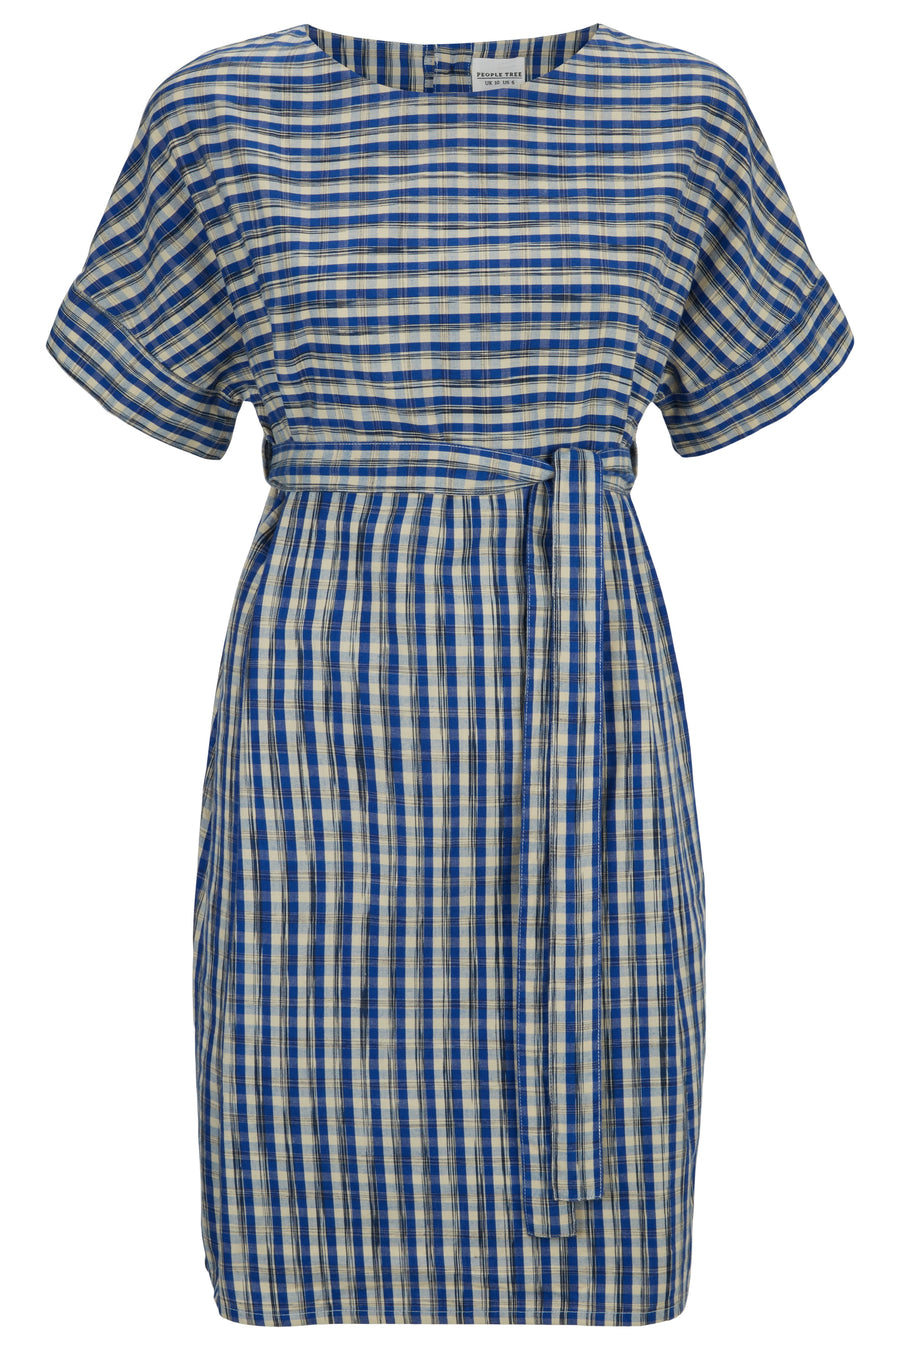 People Tree Fairer Handel, ethische und nachhaltige Christabel Ikat -Kleid in Blue Check 100% Bio -Baumwolle